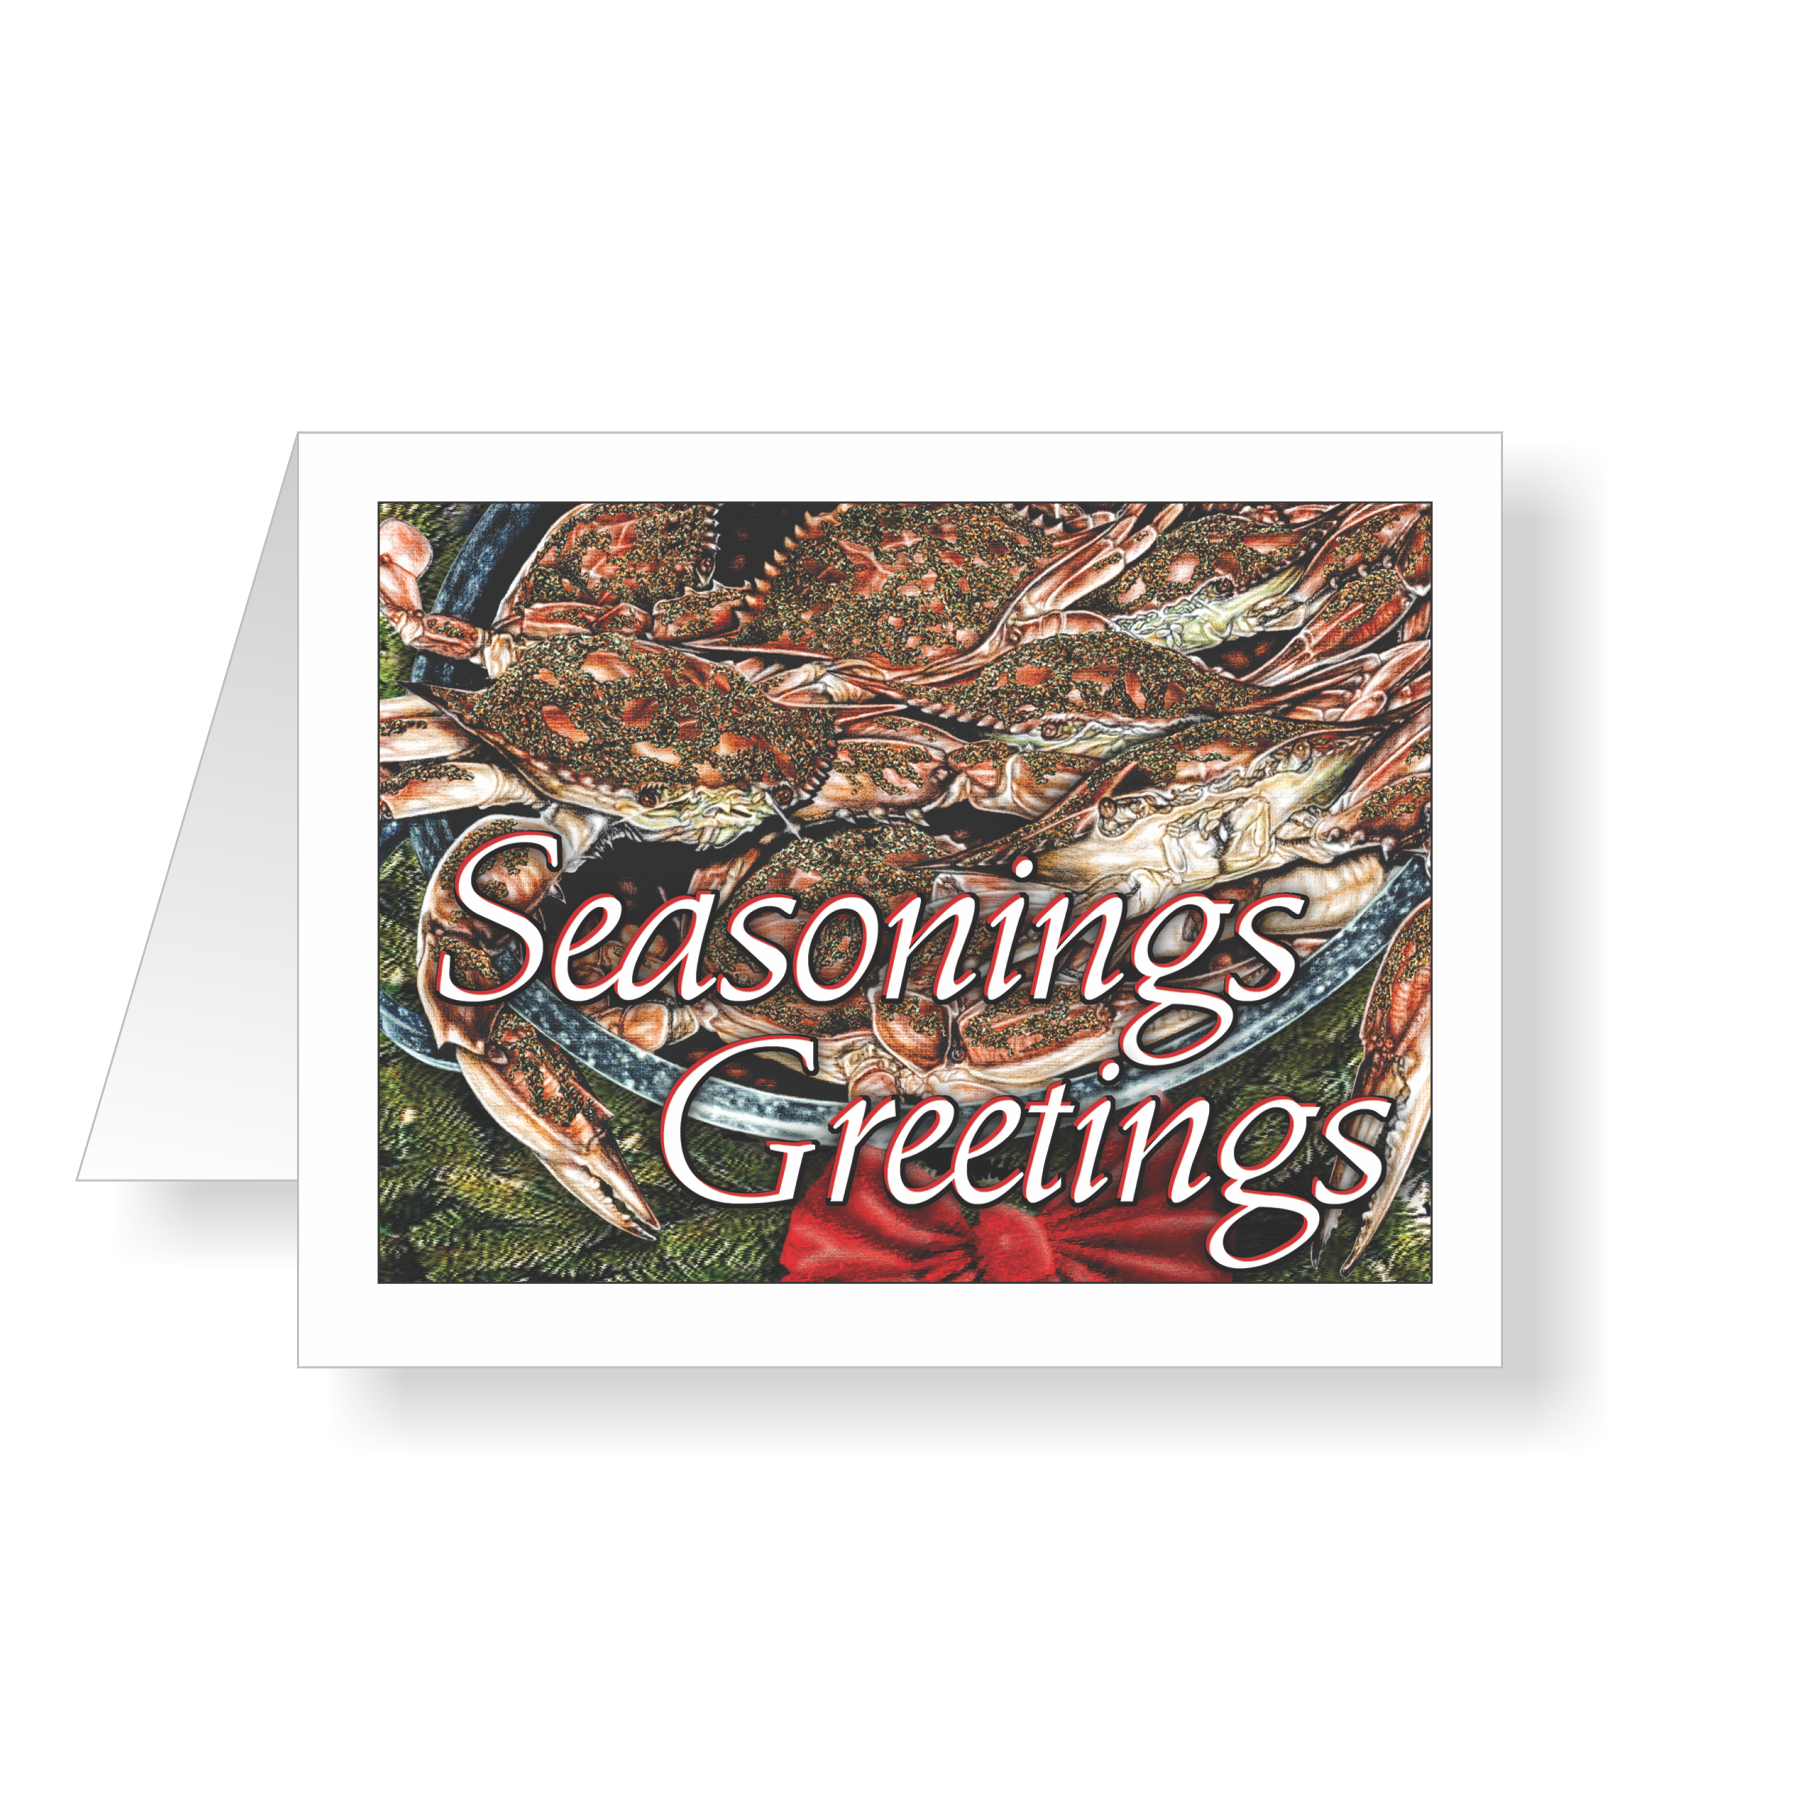 Seasonings Greetings Christmas Cards - JWB Art Unlimited